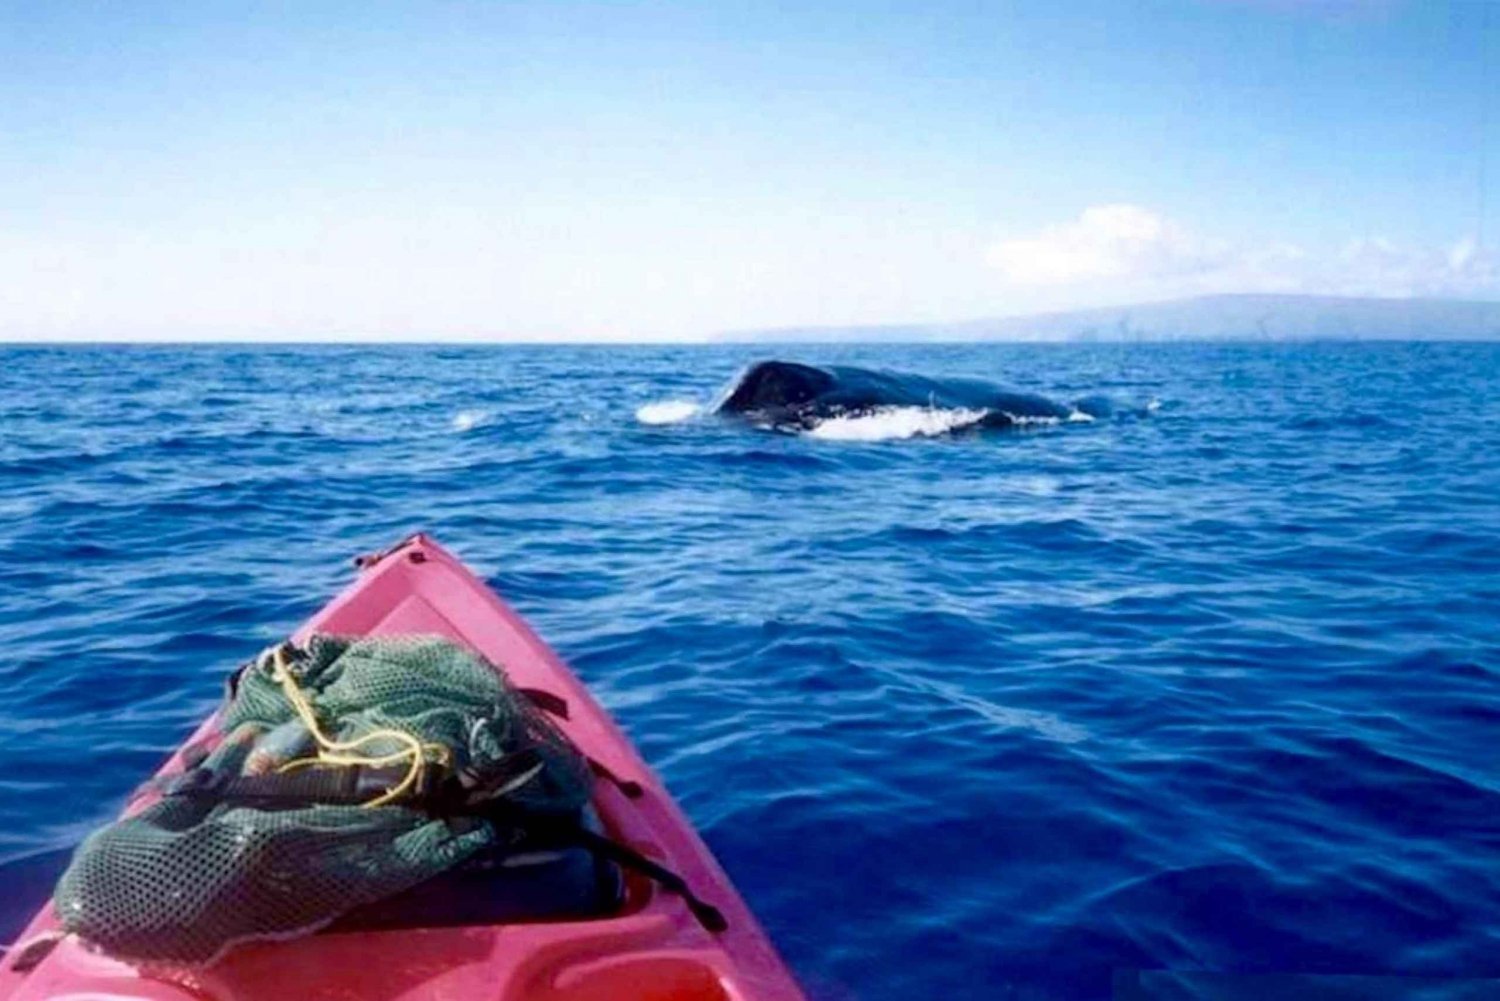 Sul de Maui: passeio de caiaque e mergulho com snorkel para observação de baleias em Kihei